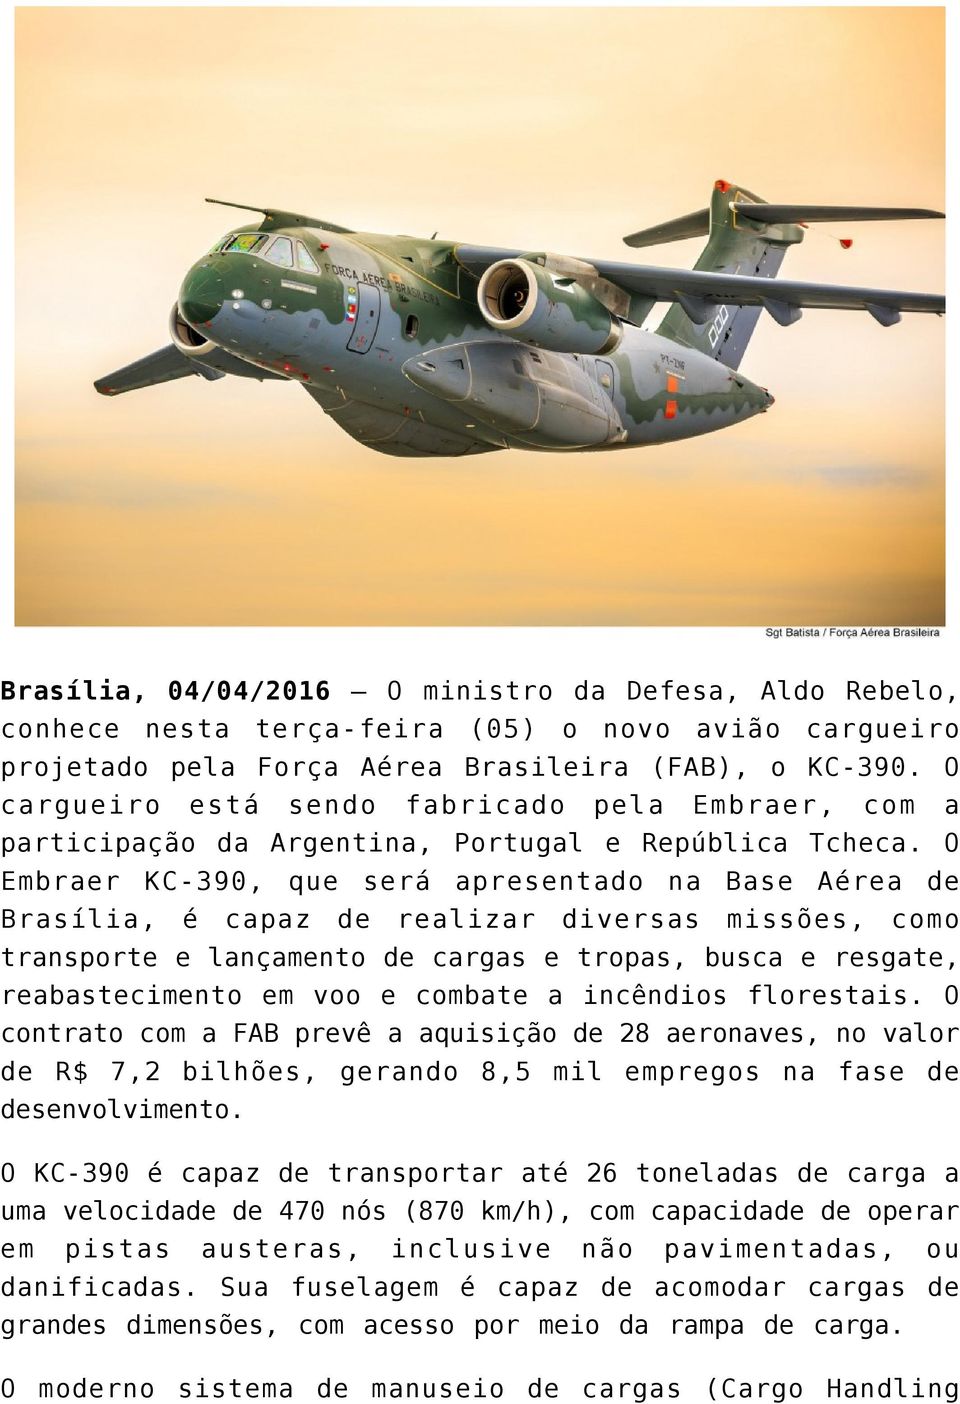 O Embraer KC-390, que será apresentado na Base Aérea de Brasília, é capaz de realizar diversas missões, como transporte e lançamento de cargas e tropas, busca e resgate, reabastecimento em voo e